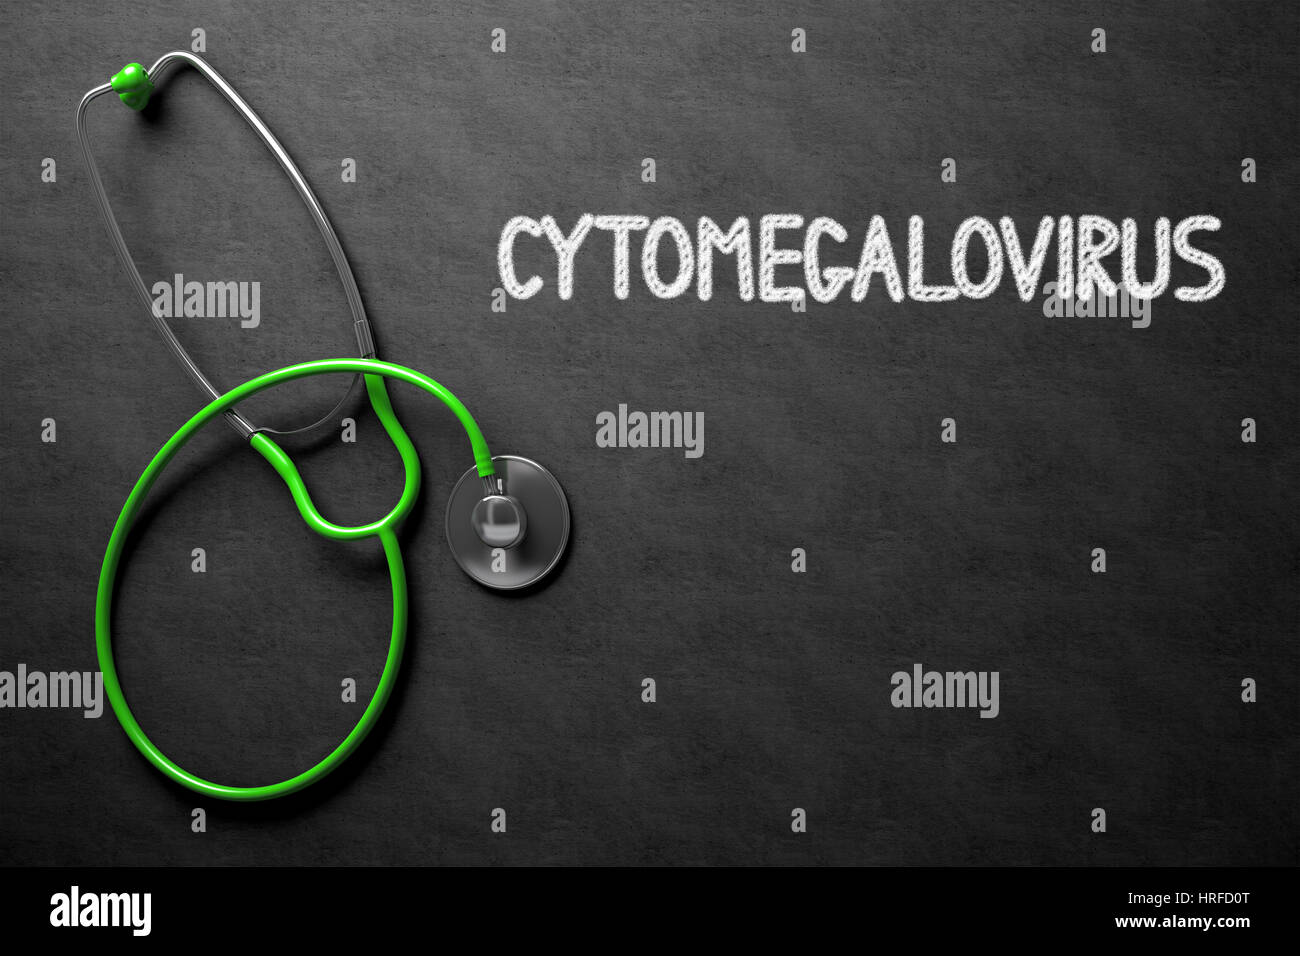 Concetto medico: citomegalovirus - concetto medico sulla lavagna. Concetto medico: citomegalovirus - lavagna nera con disegnati a mano e di testo Foto Stock